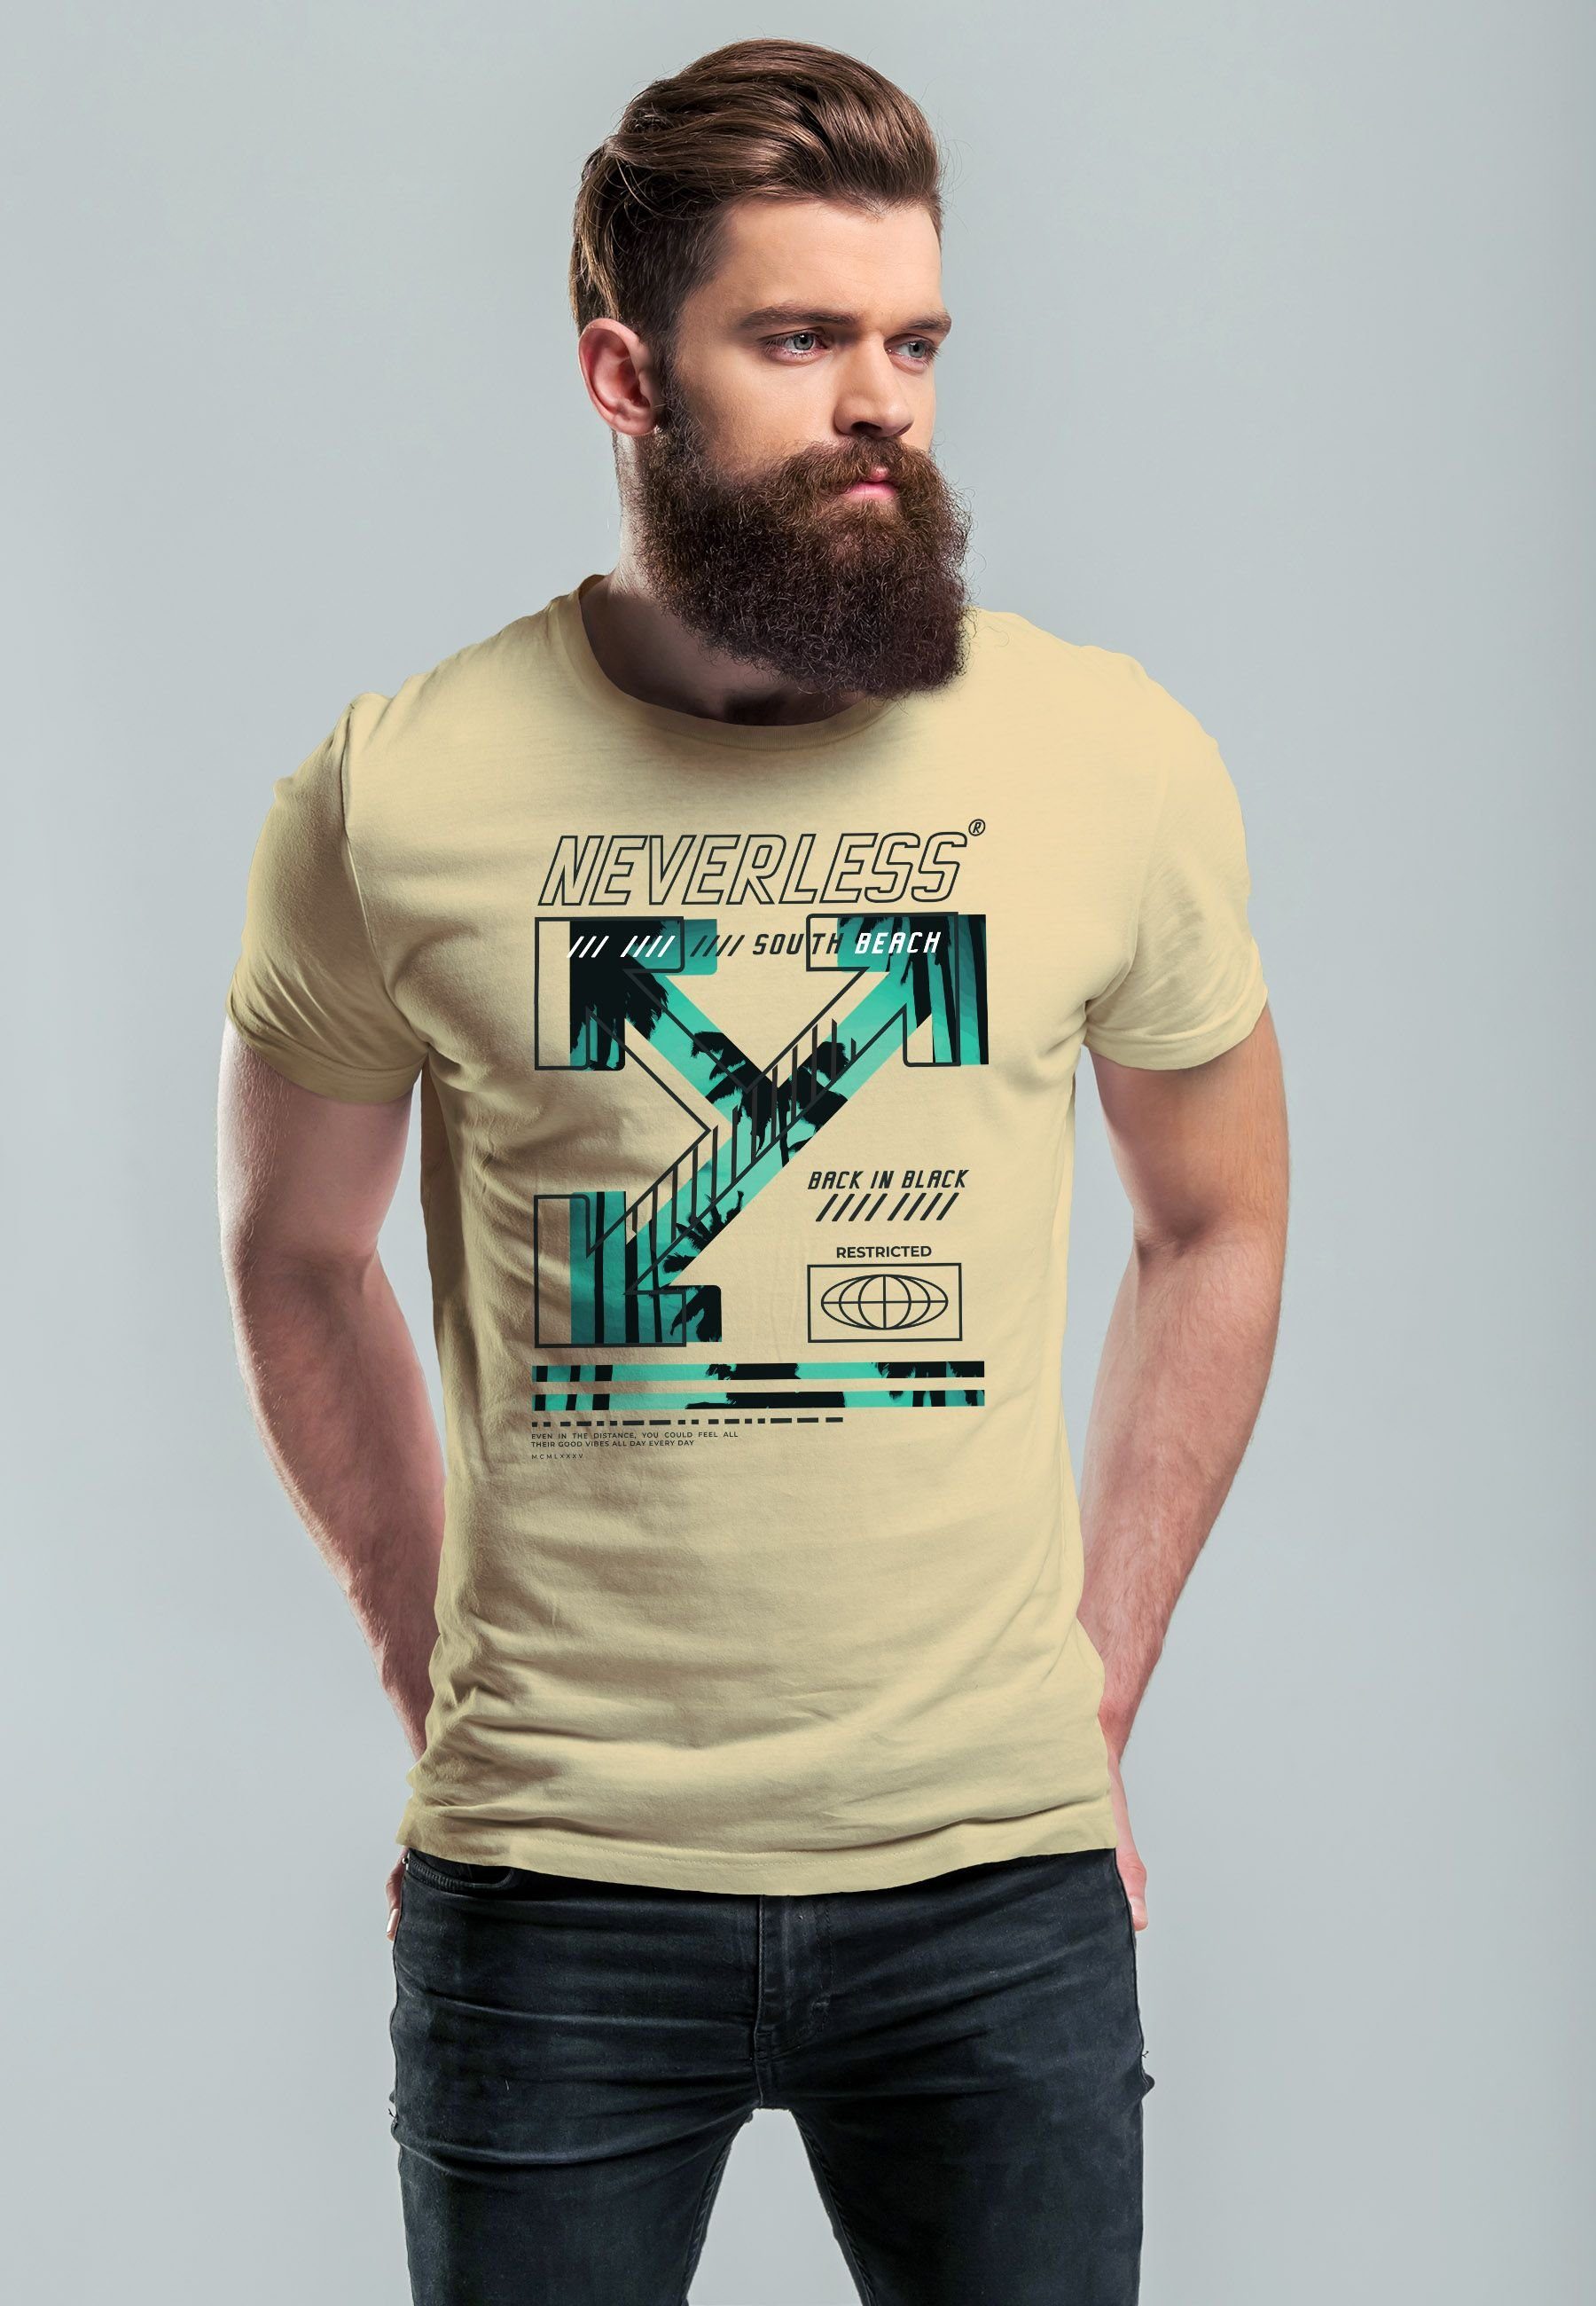 Neverless Text Print mit Fashion Street Print Techwear Print-Shirt T-Shirt Herren Beach Aufdruck South natur